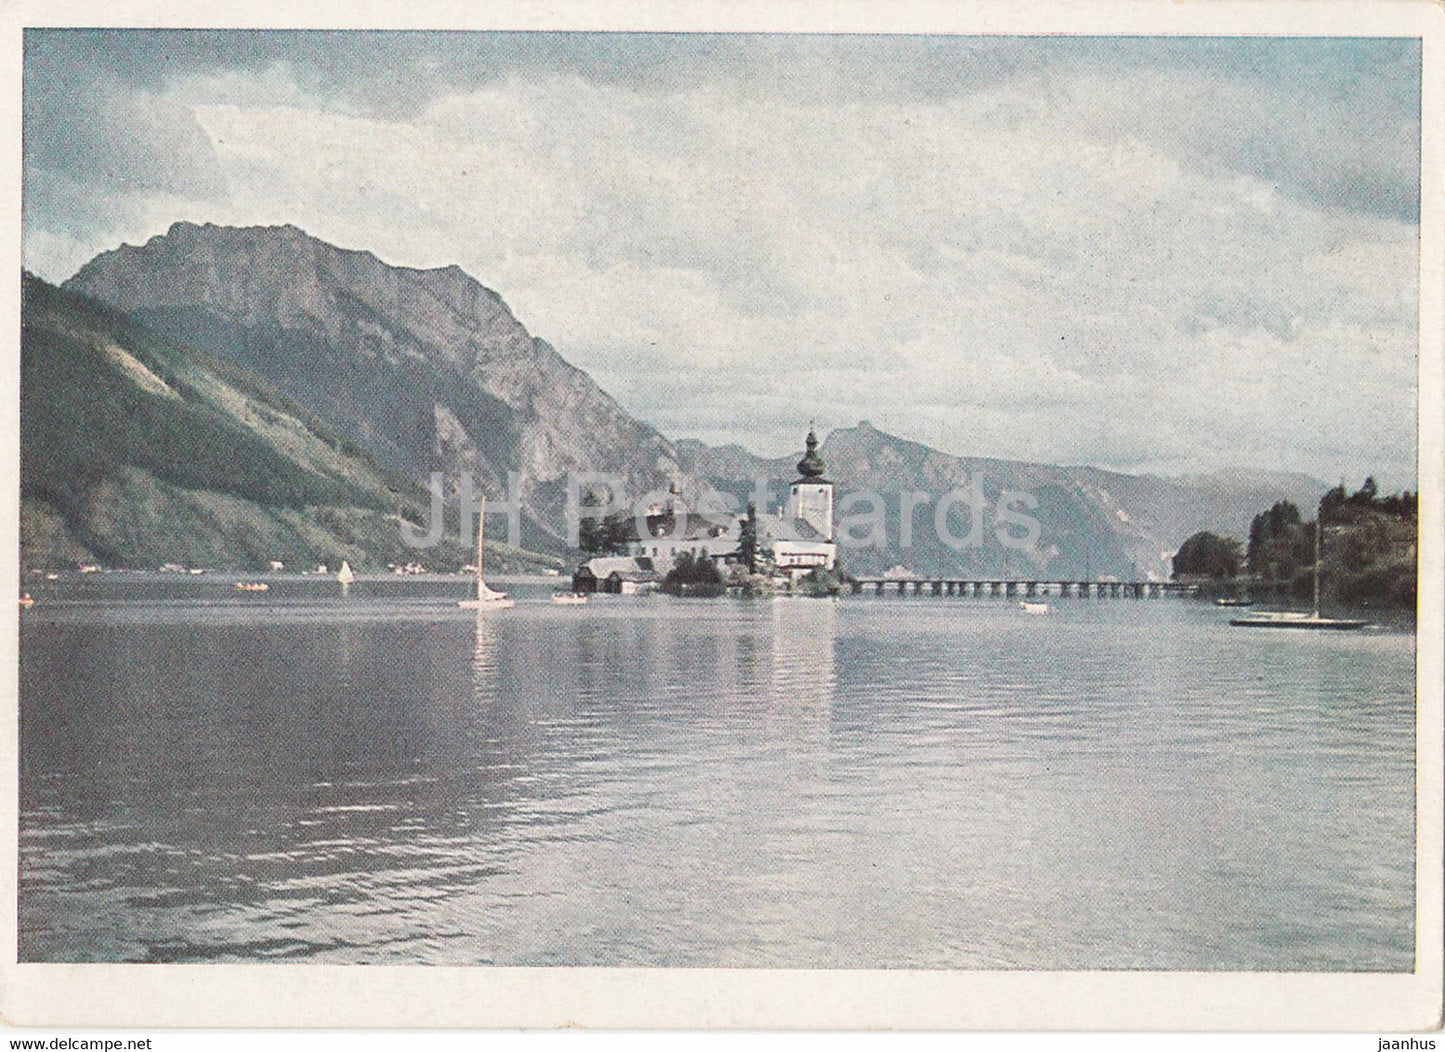 Gmunden am Traunsee - Seeschloss Traunstein - Austria - unused - JH Postcards